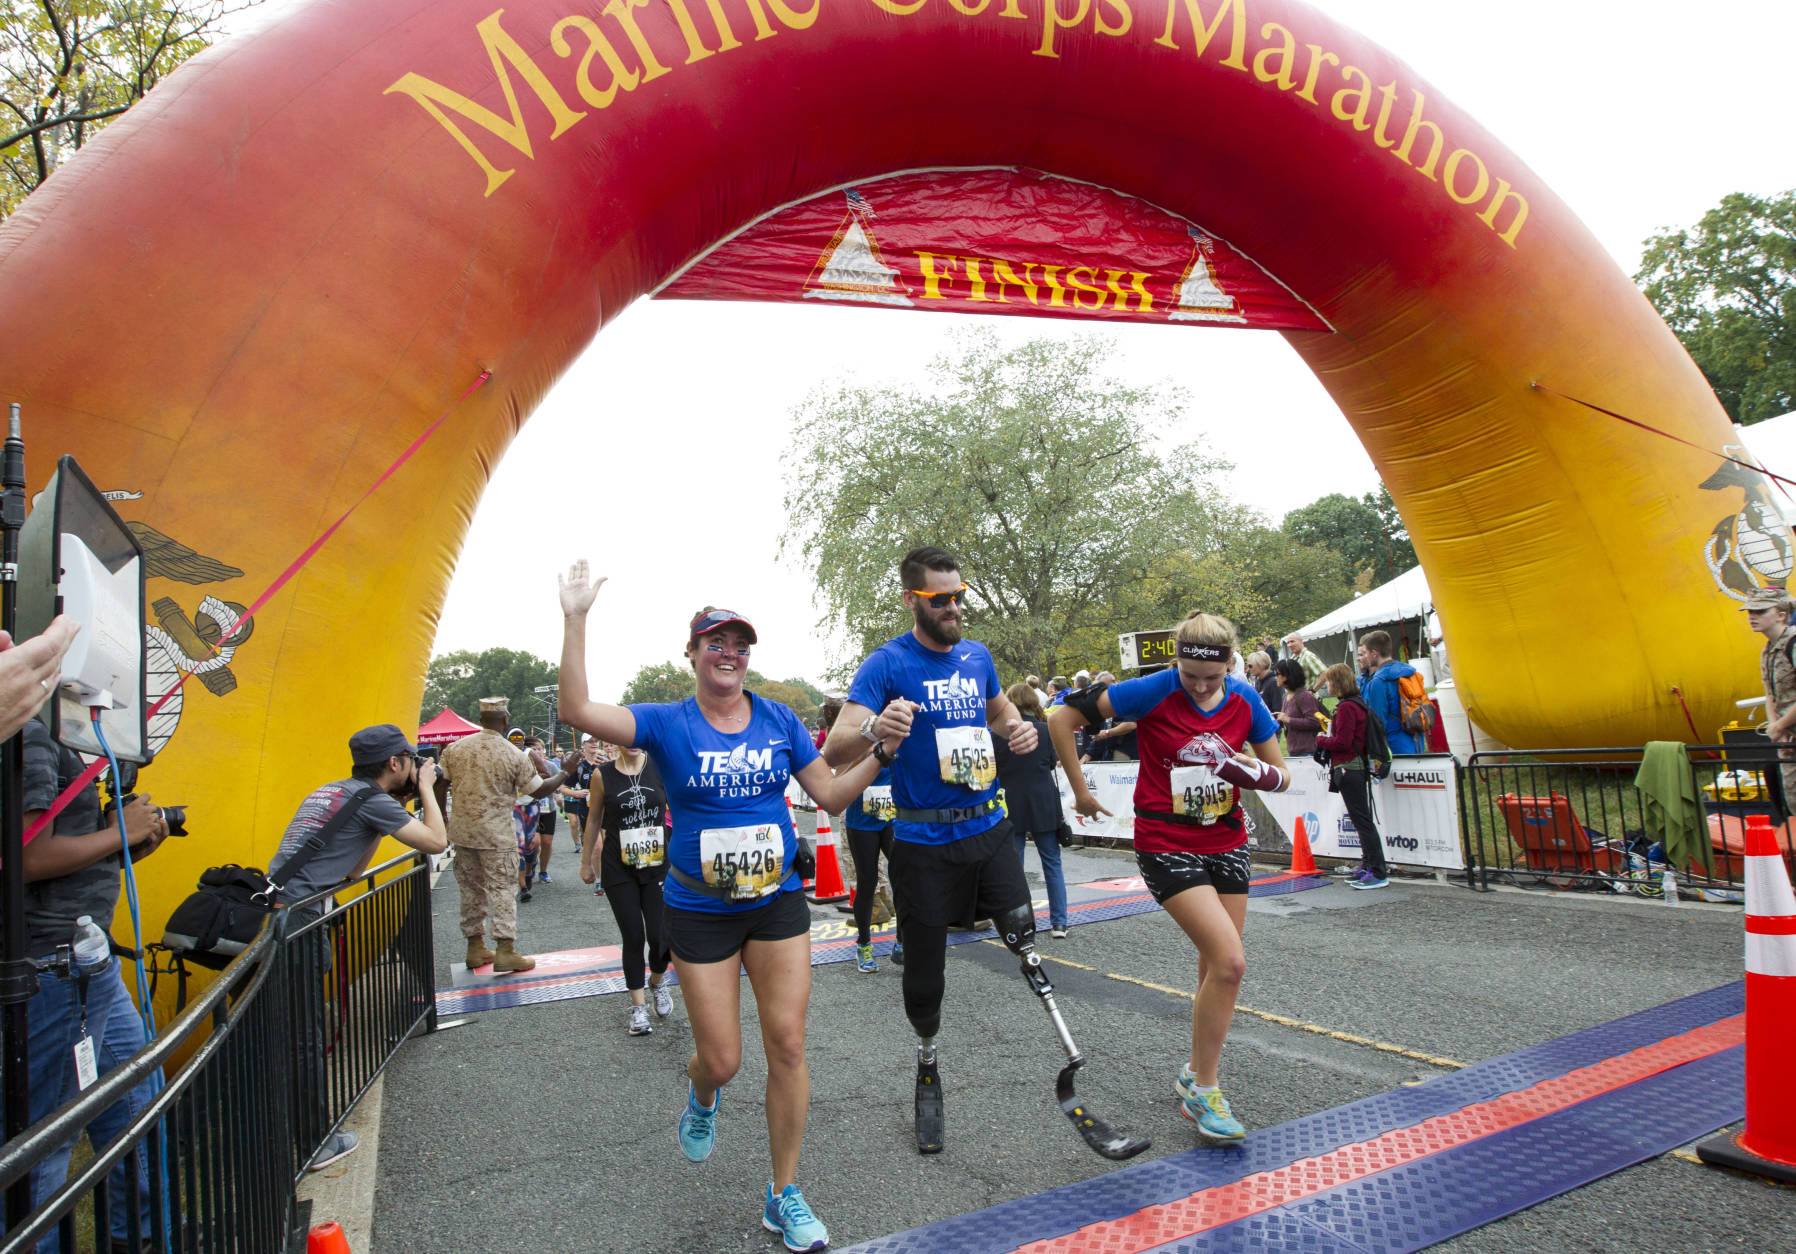 download marine corps marathon 2022 start time